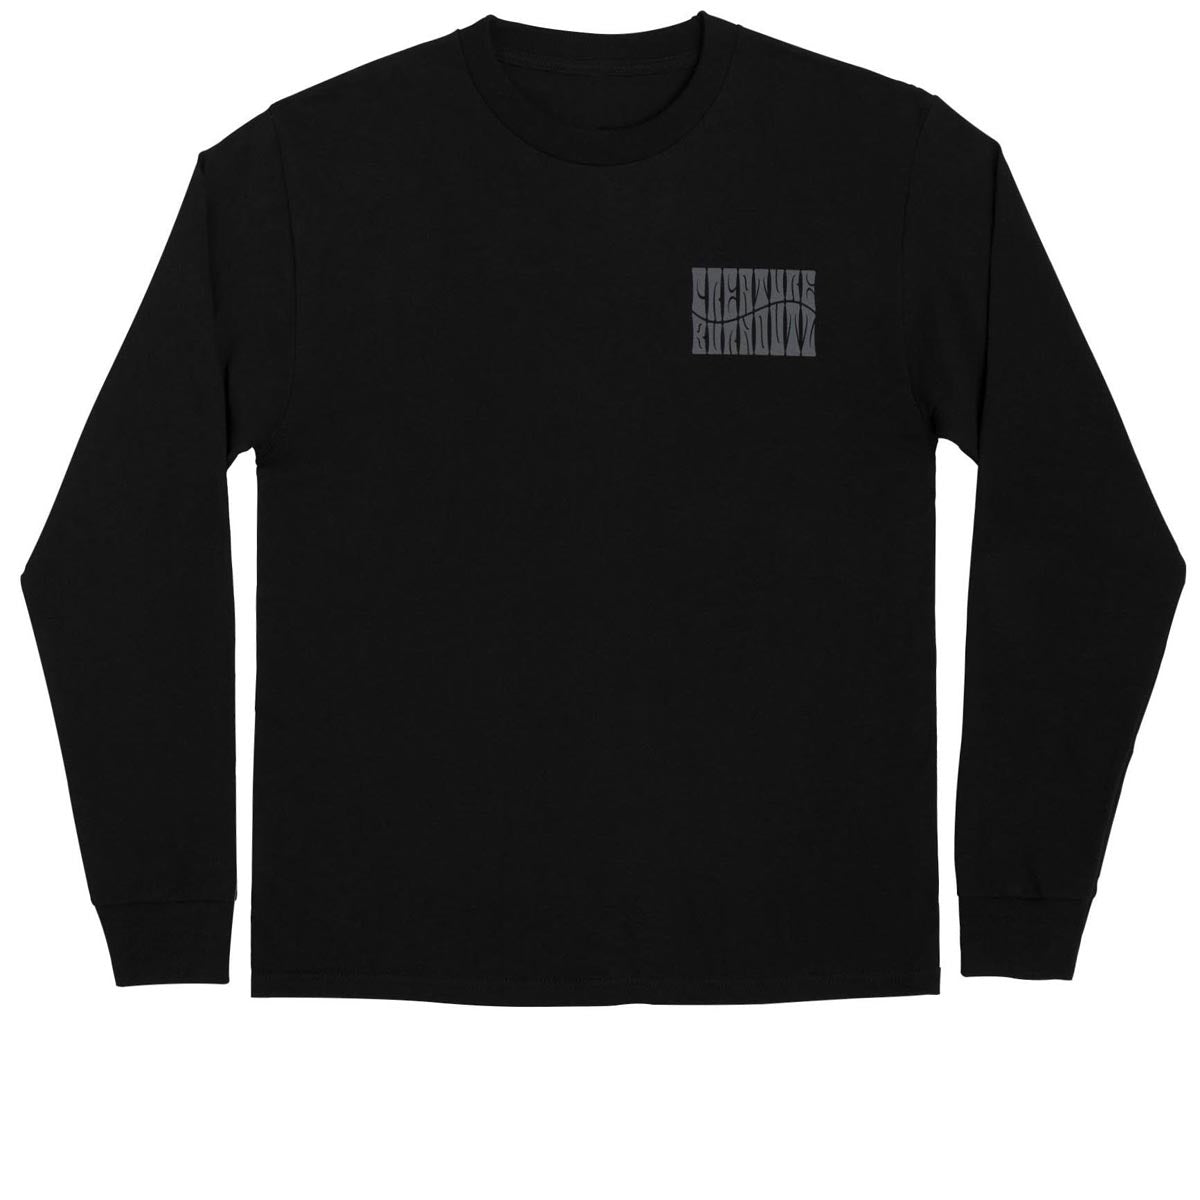 Creature Burnoutz VC Long Sleeve T-Shirt - Black image 2